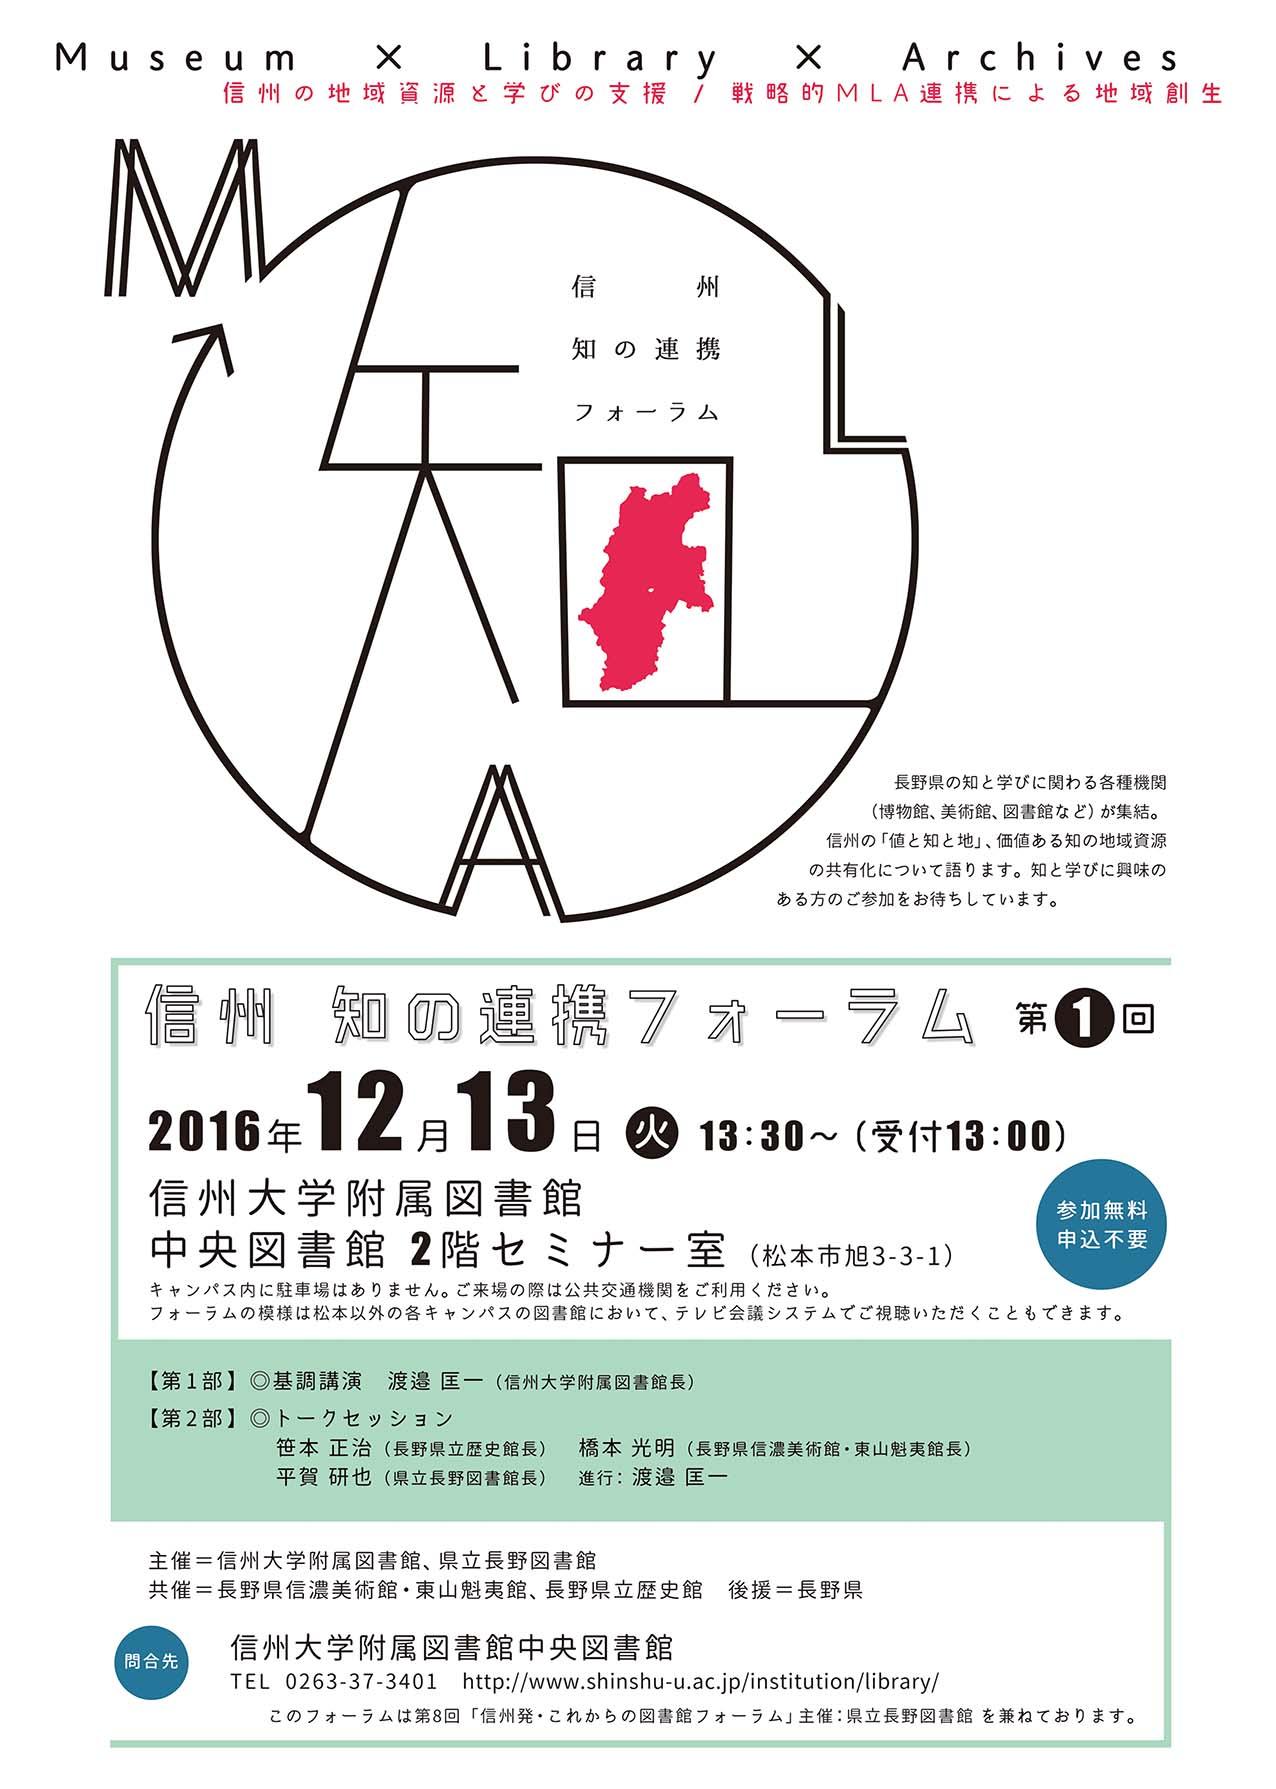 https://www.shinshu-u.ac.jp/institution/library/shinshuforum20161213.jpg